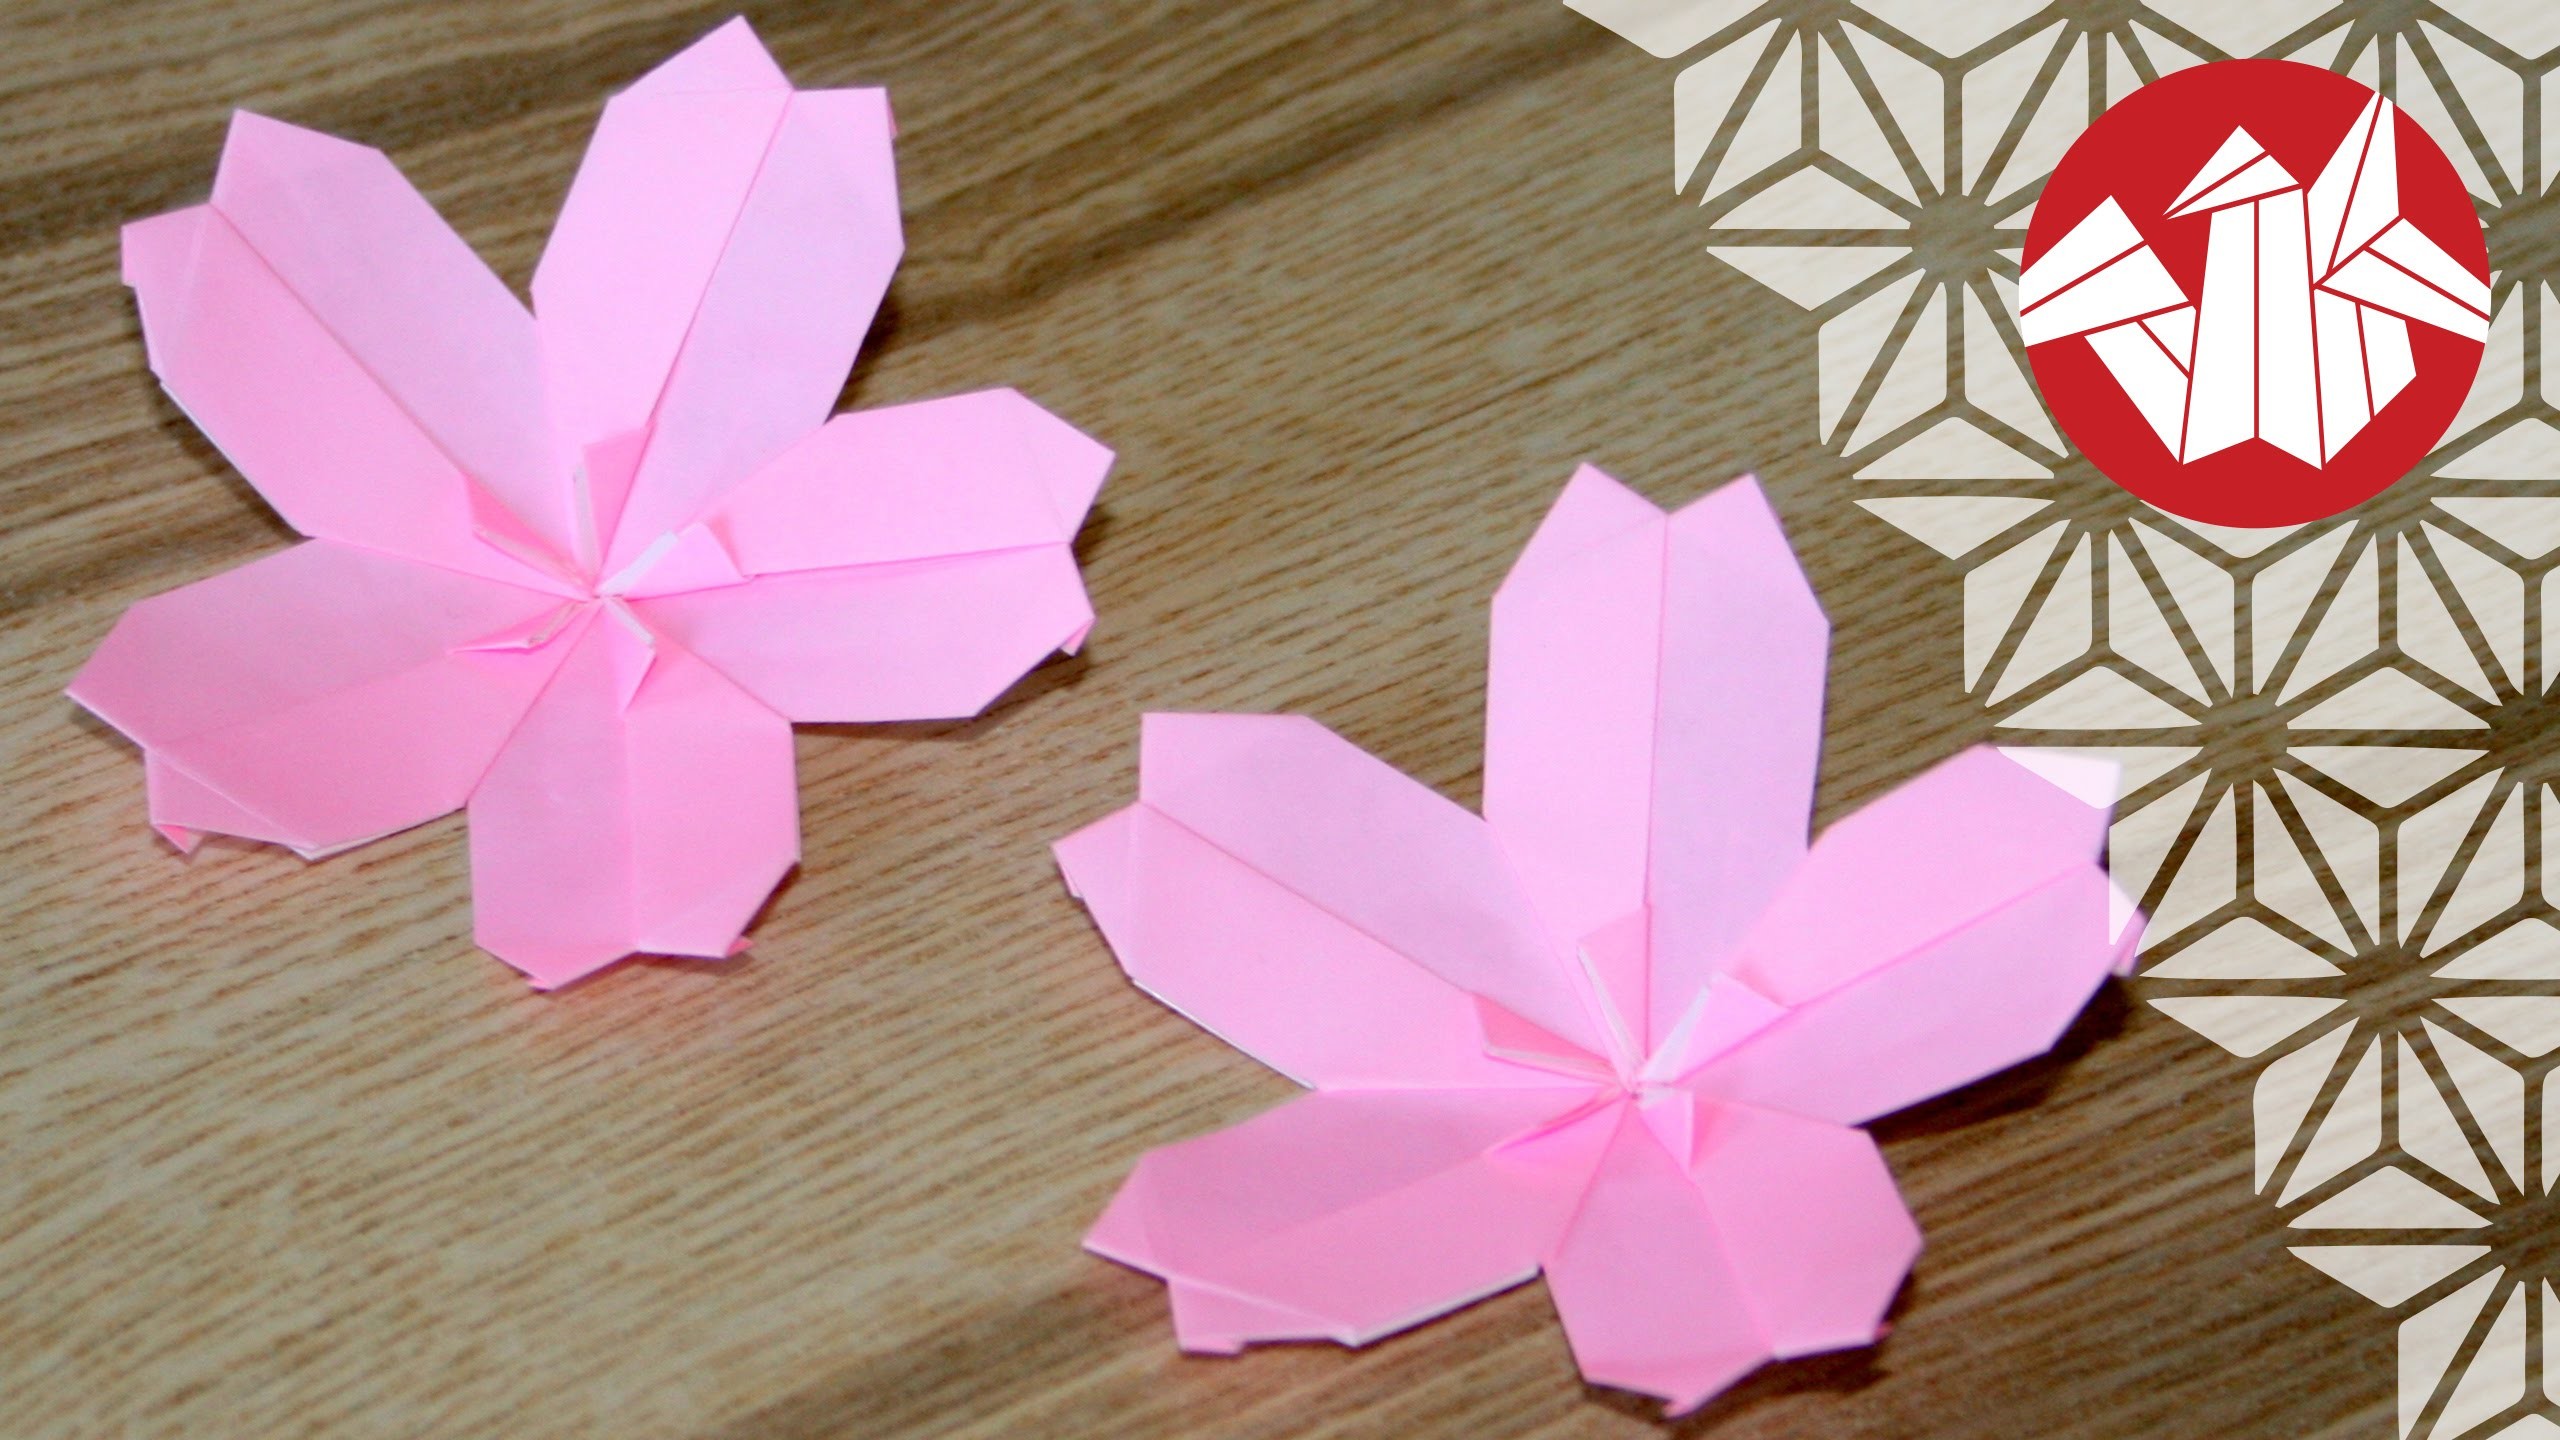 Tuto Origami - Sakura : Fleur de cerisier [Senbazuru]